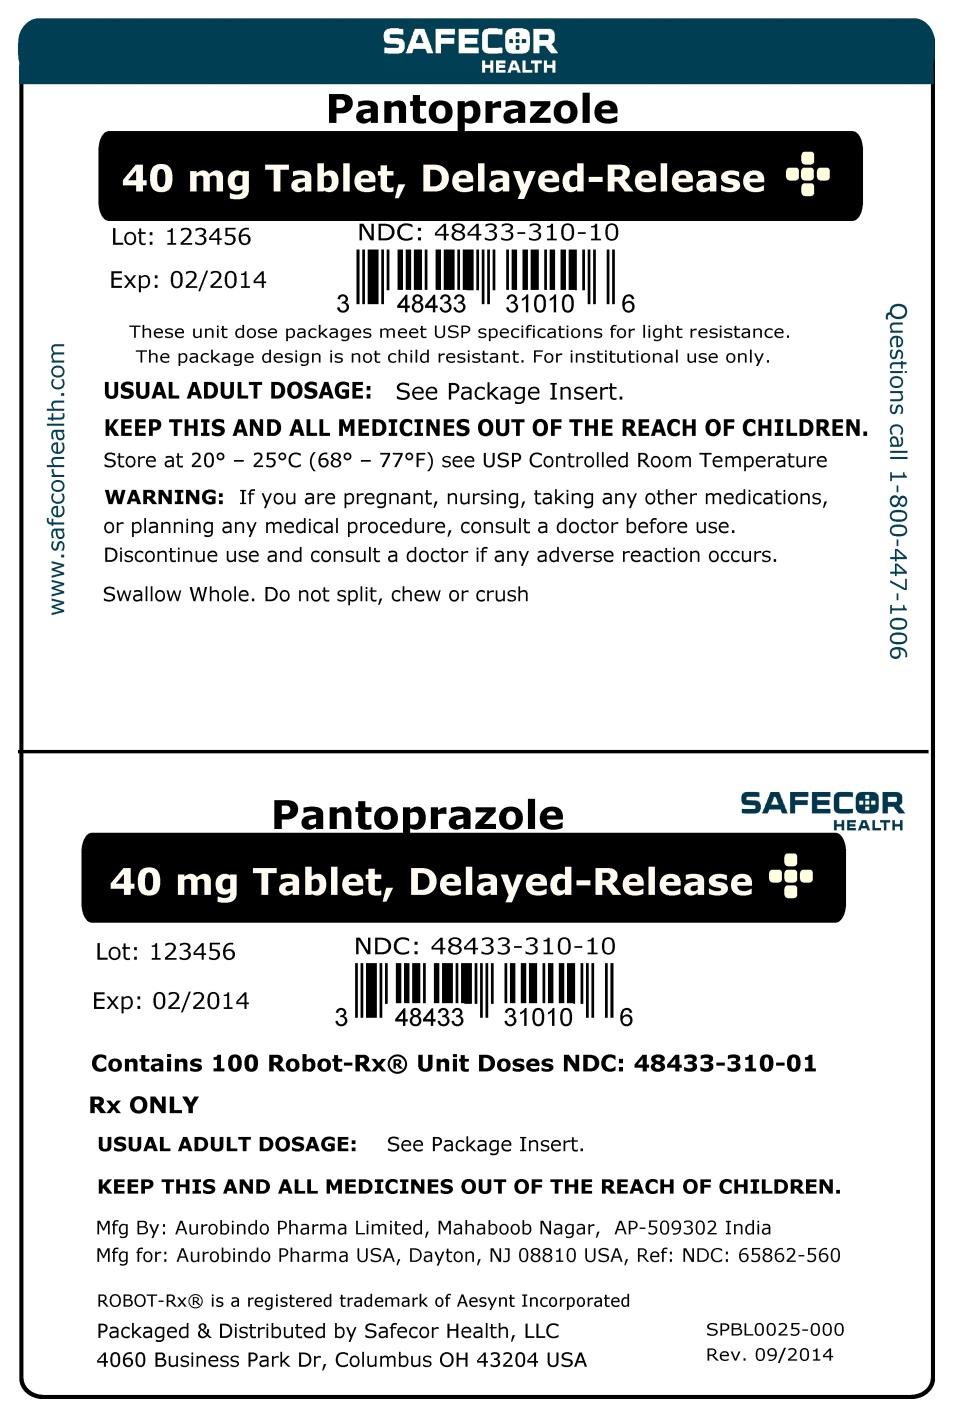 Pantoprazole 40 mg Robot UD Box Label